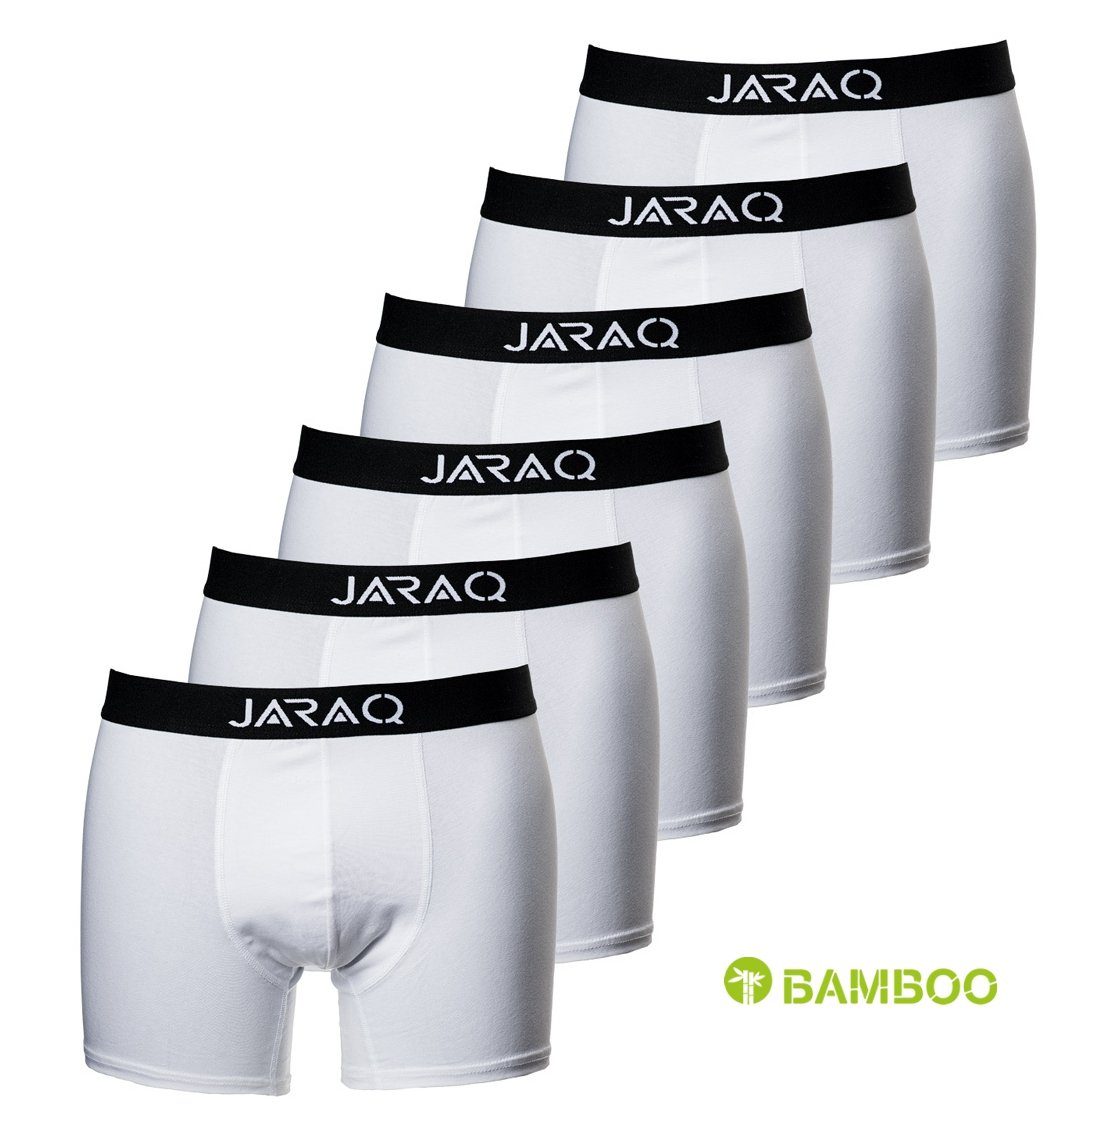 JARAQ Boxer JARAQ Bambus Boxershorts Herren 6er Pack Perfekte Passform  Unterhosen für Männer S - 4XL Weiß